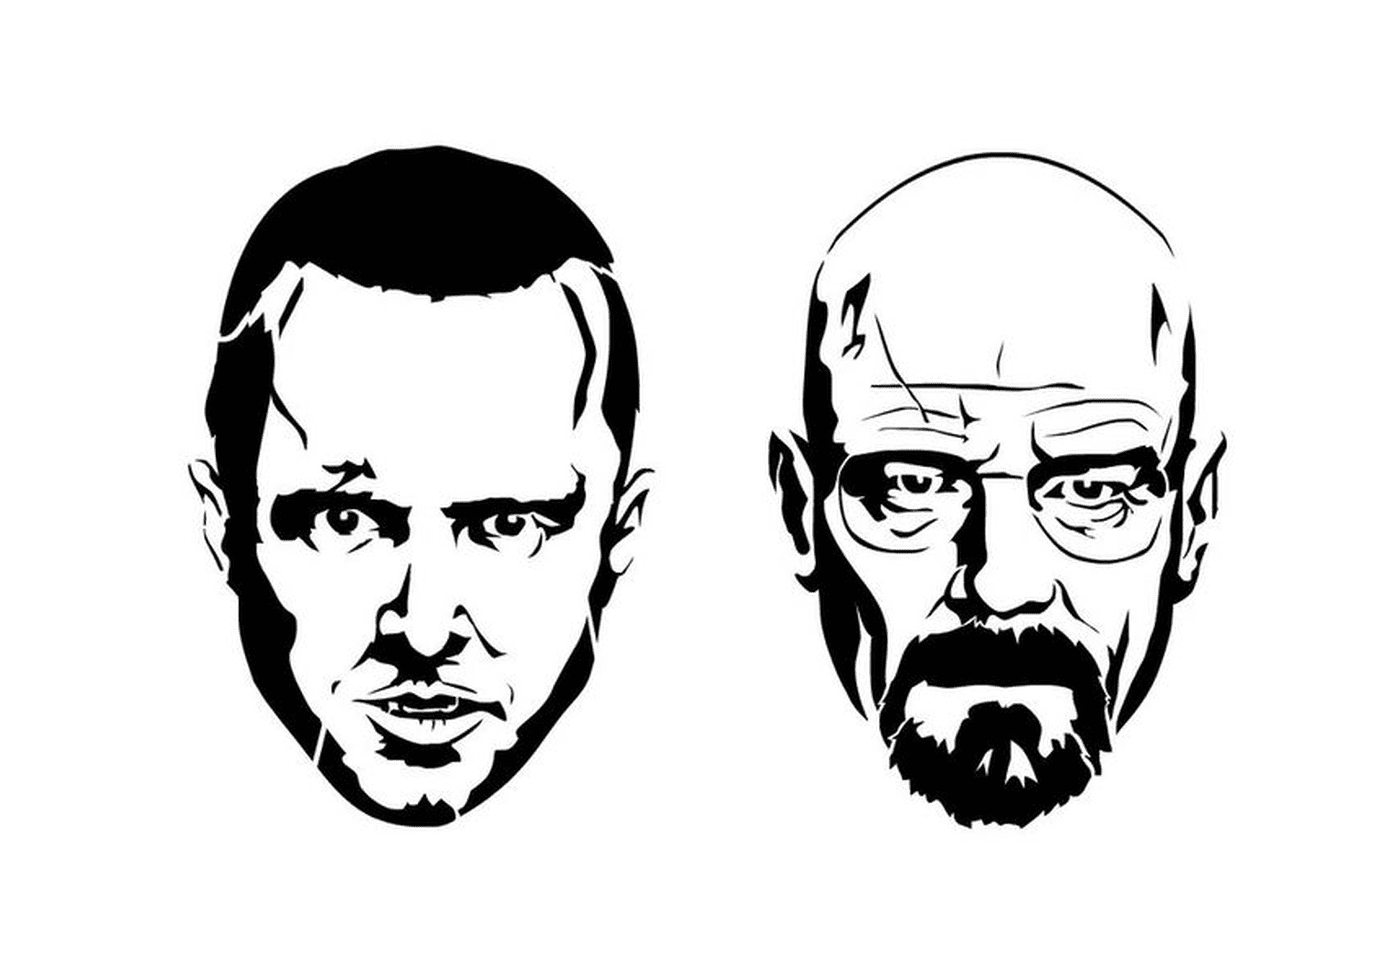   Deux images en noir et blanc de Walter White et Jesse Pinkman de Breaking Bad 